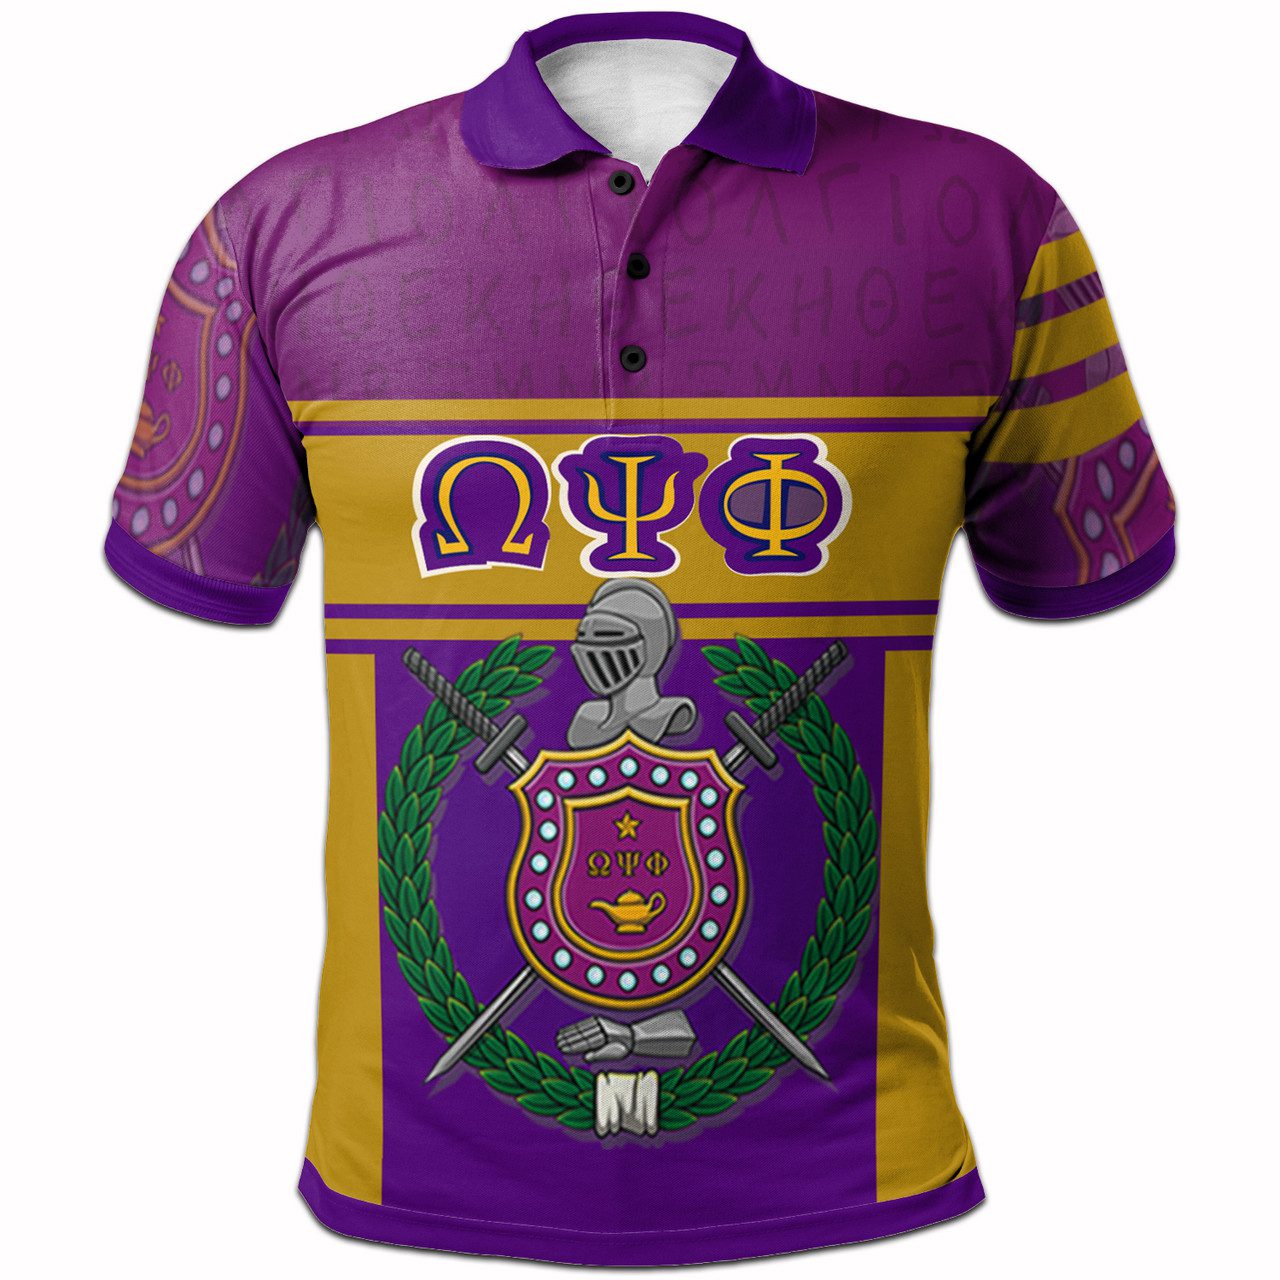 Omega Psi Phi Polo Shirt – Fraternity Heritage Polo Shirt